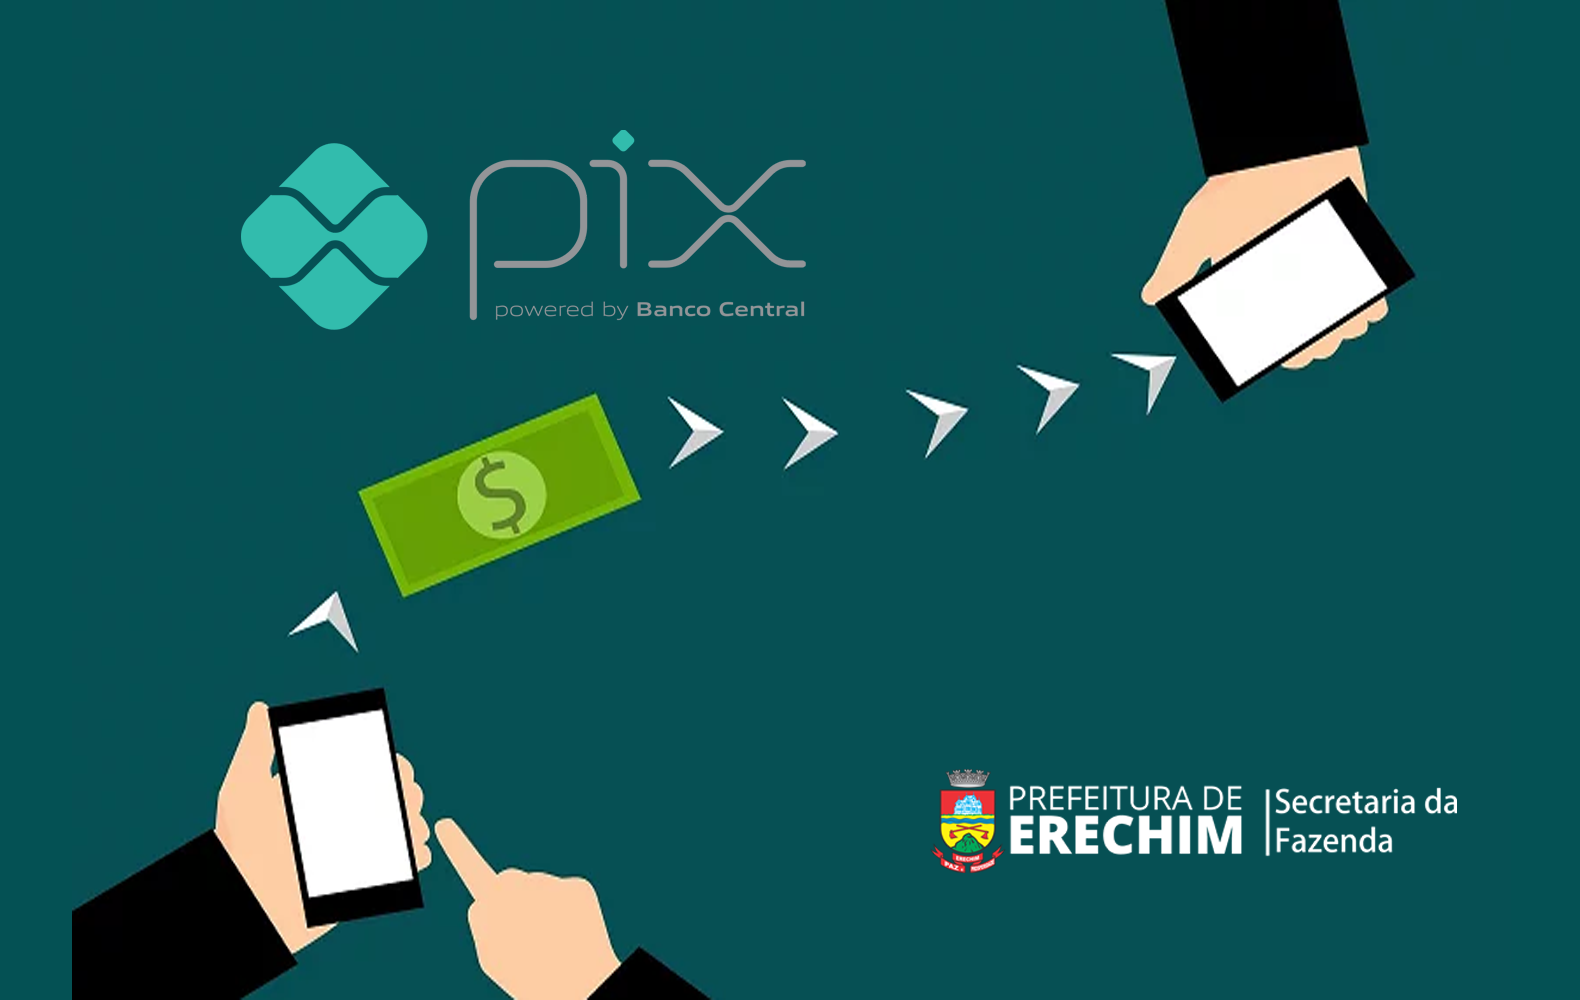  Pix pode ser usado para pagamento de guias da Prefeitura de Erechim